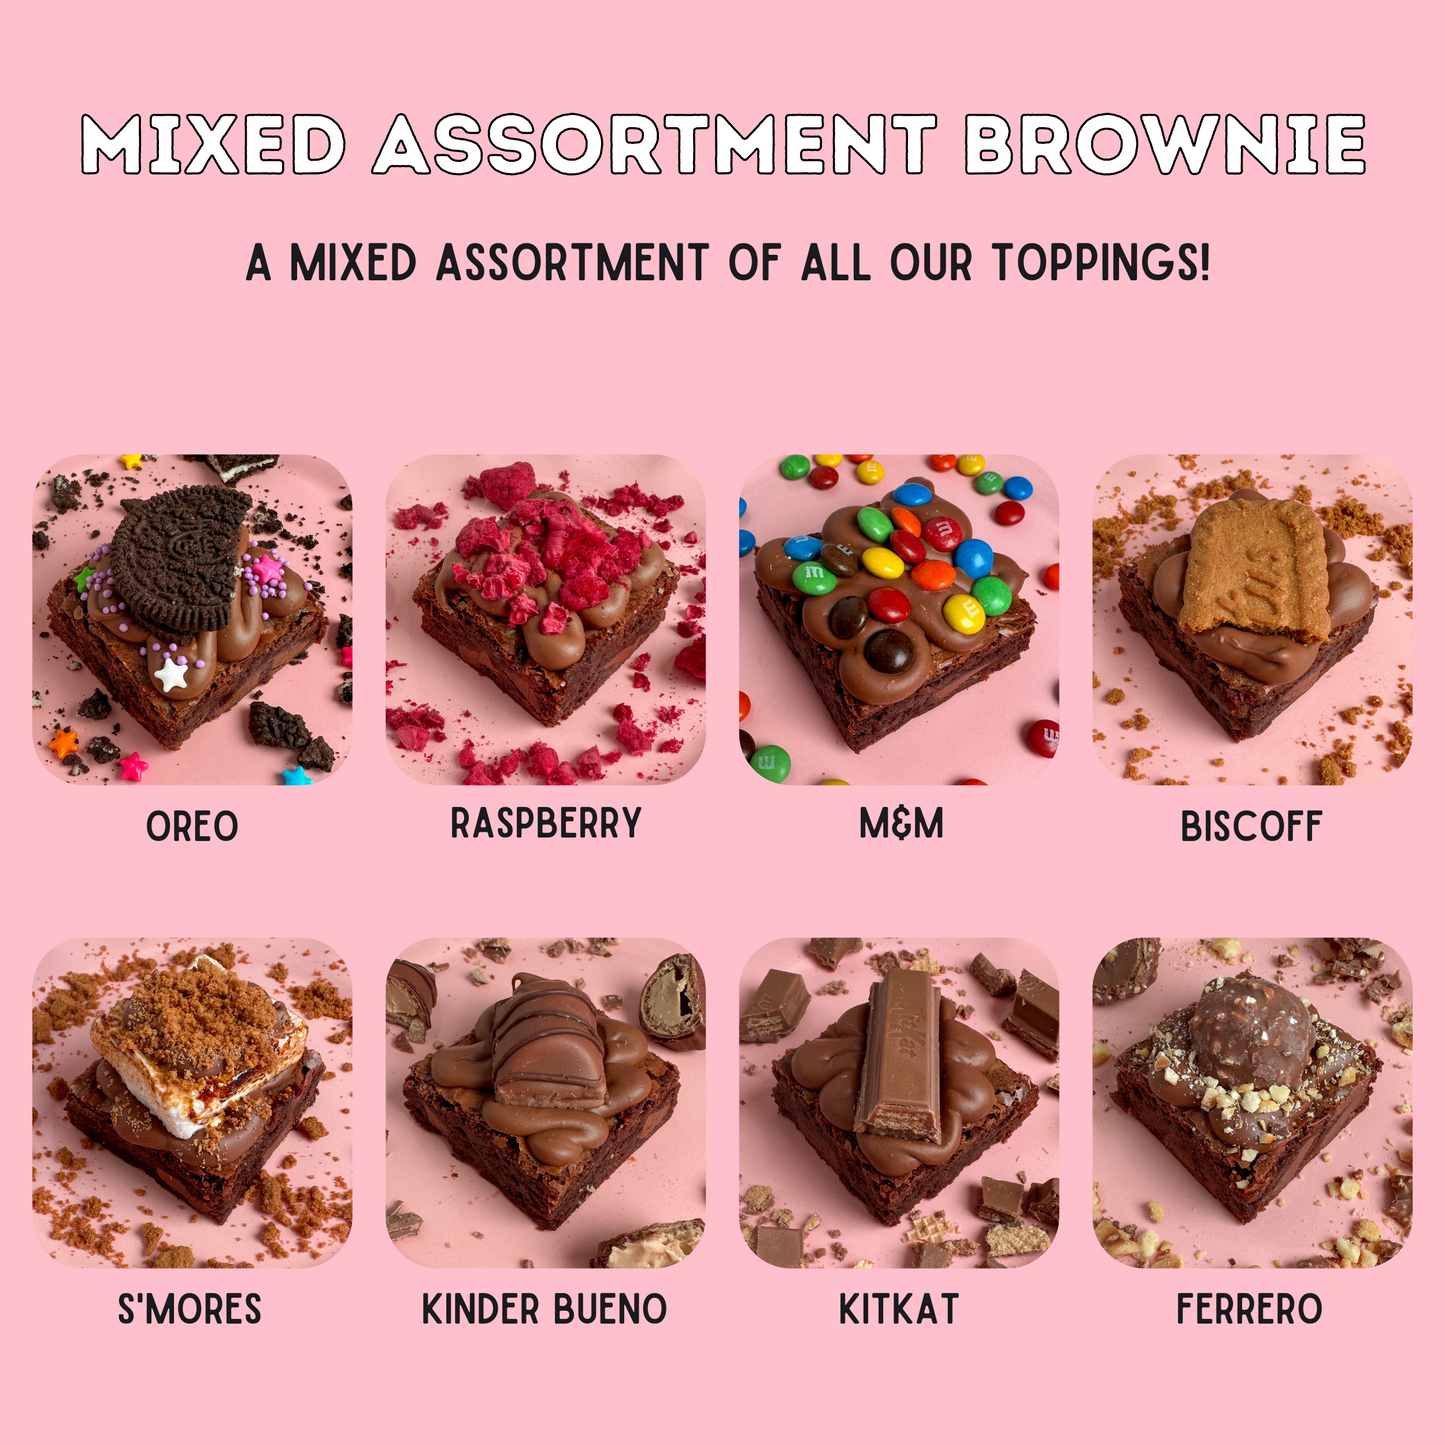 Mega mixed assortment brownie